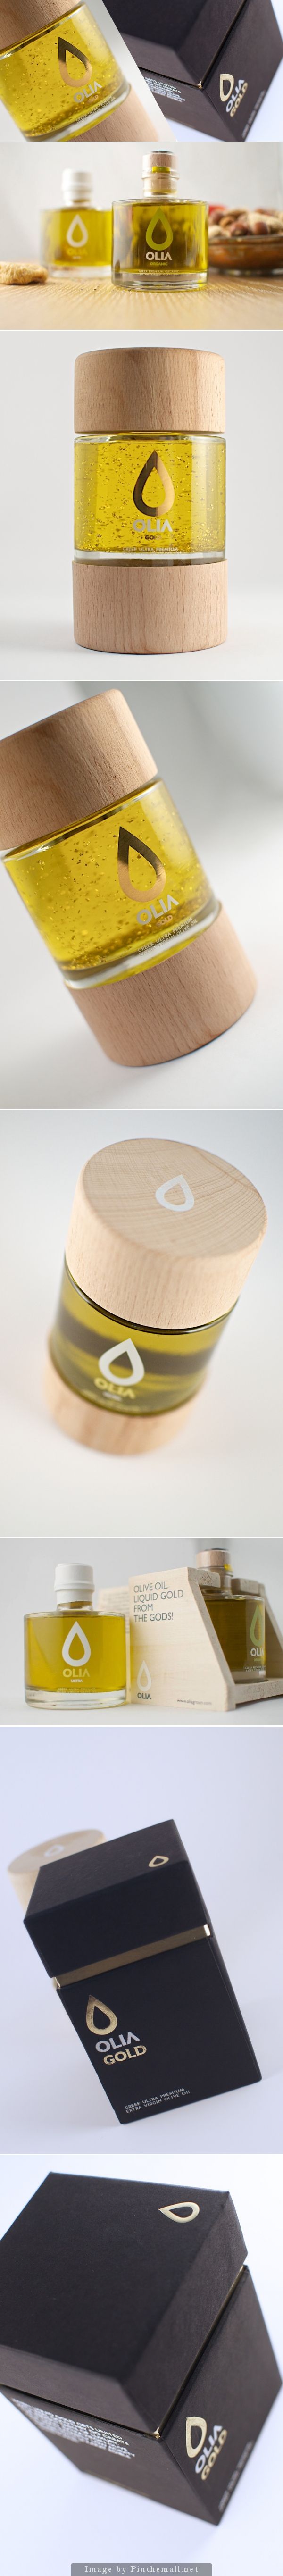 olive_oil_elegant_packaging_design_10